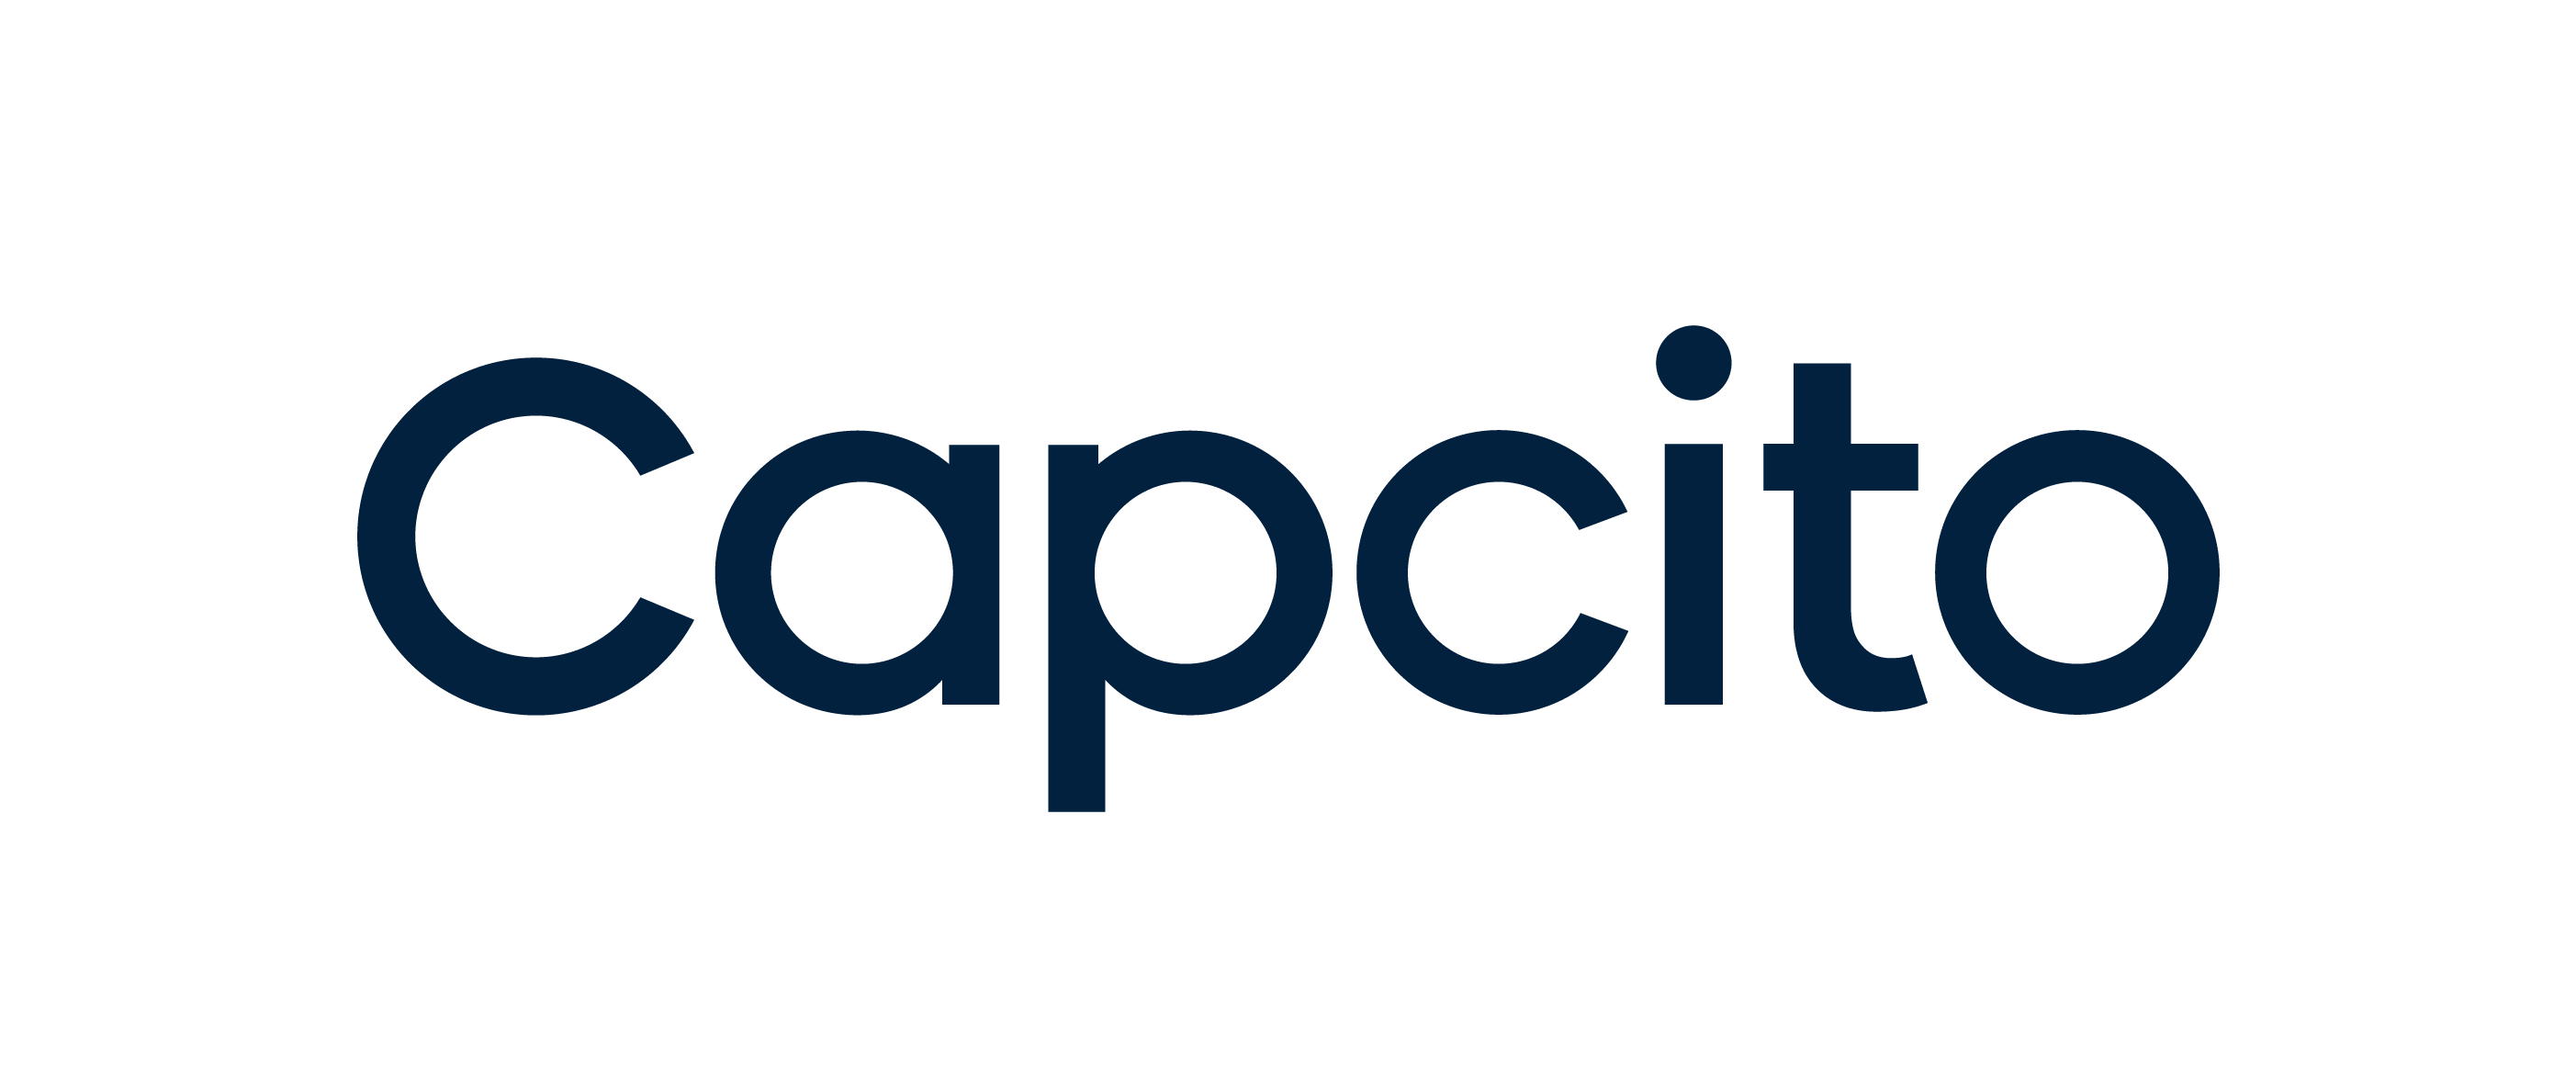 Capcito (logo).